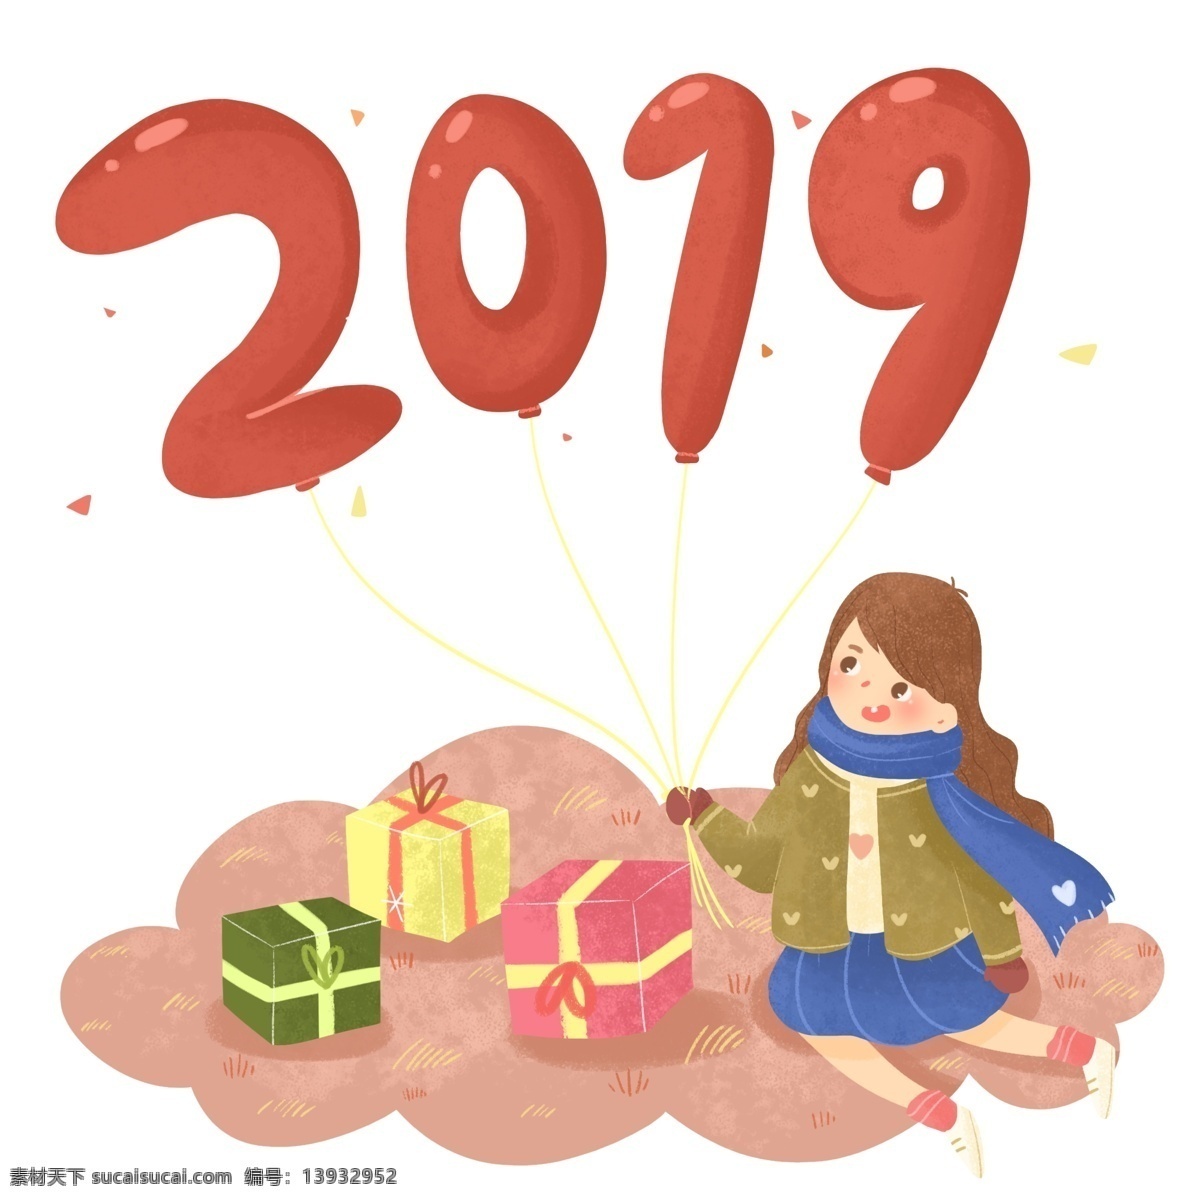 卡通 可爱 2019 年 新年 元旦 气球 插画 红色 礼物 喜庆 2019年 春节 除夕 过年 欢庆 狂欢 庆祝 欢乐 温暖